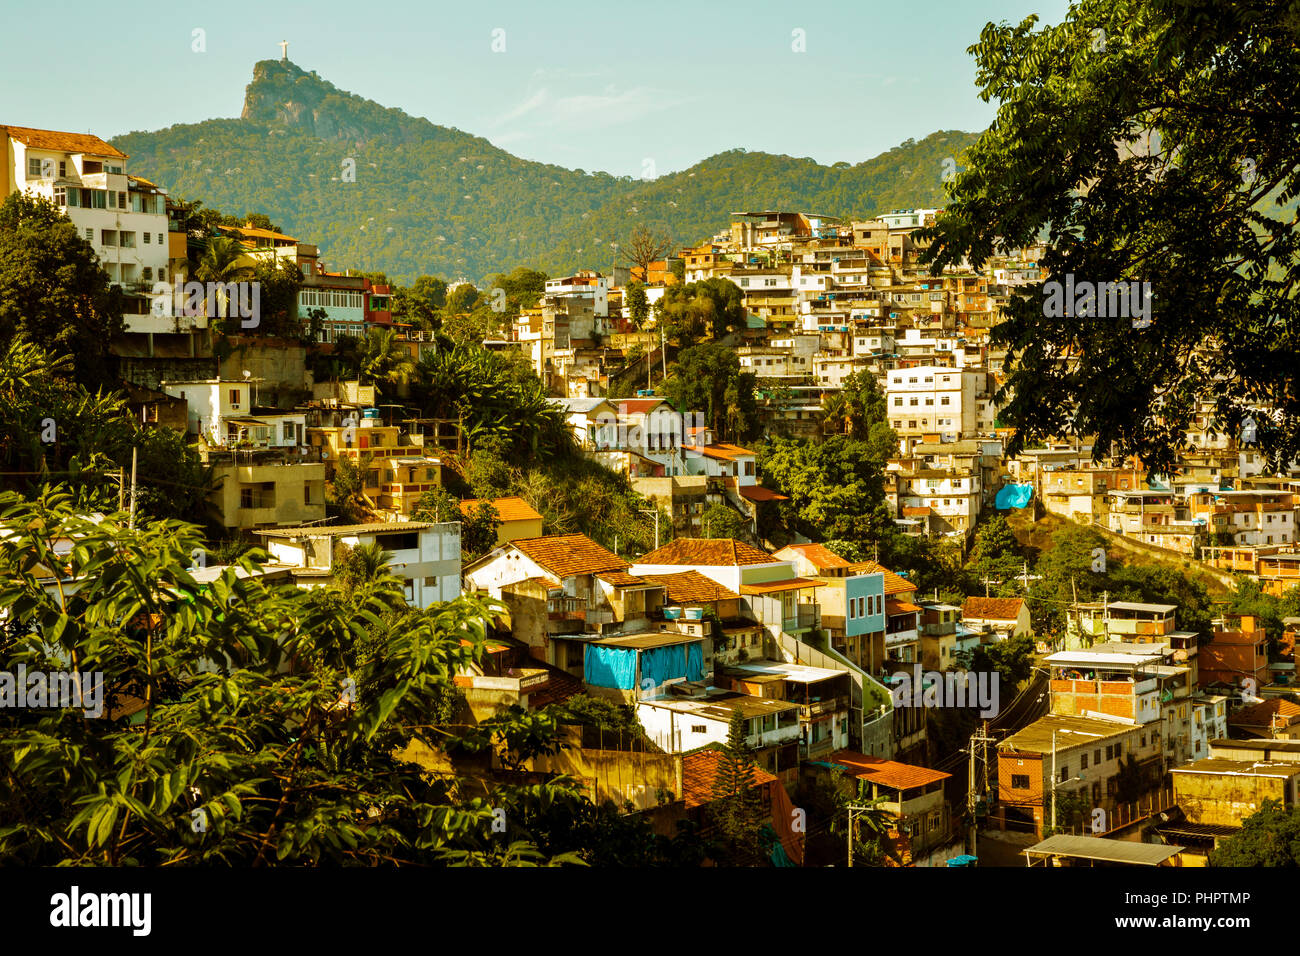 Favela in Rio de Janeiro, Brazil Stock Photo